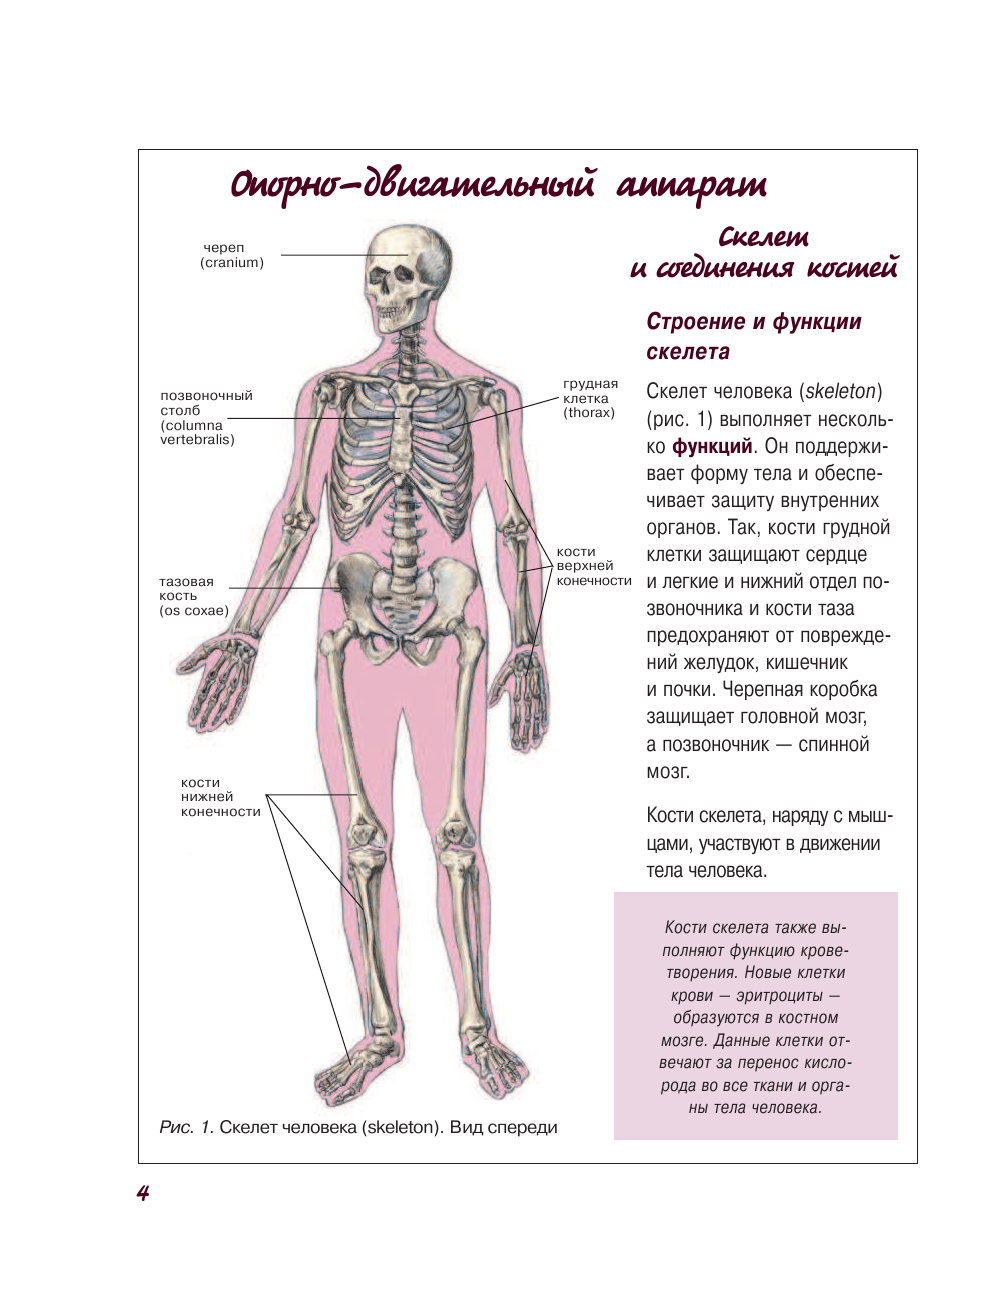  Атлас анатомии человека - страница 4